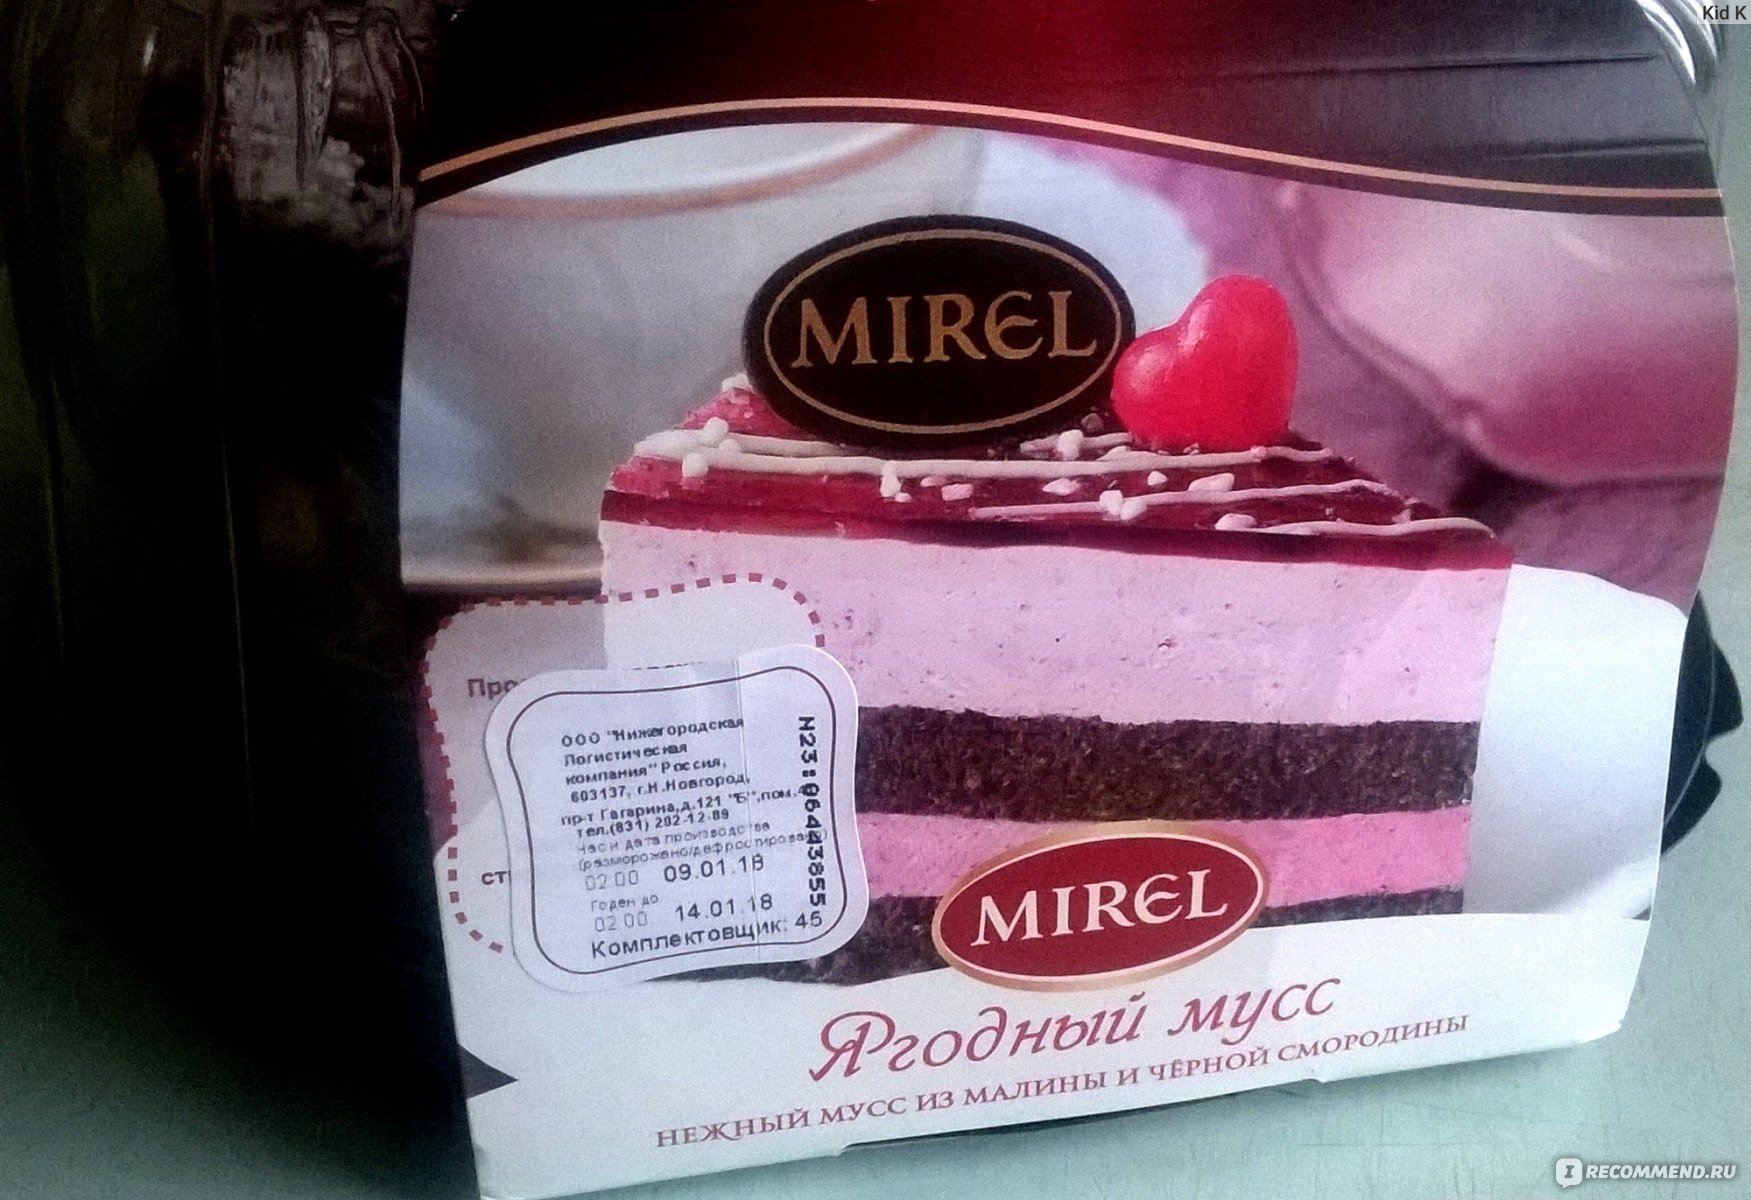 Черничное молоко отзывы. Торт Мирель ягодный. Торт Мирель черничное молоко. Торт черничный мусс Мирель. Торт Мирель черничное молоко 750 гр.